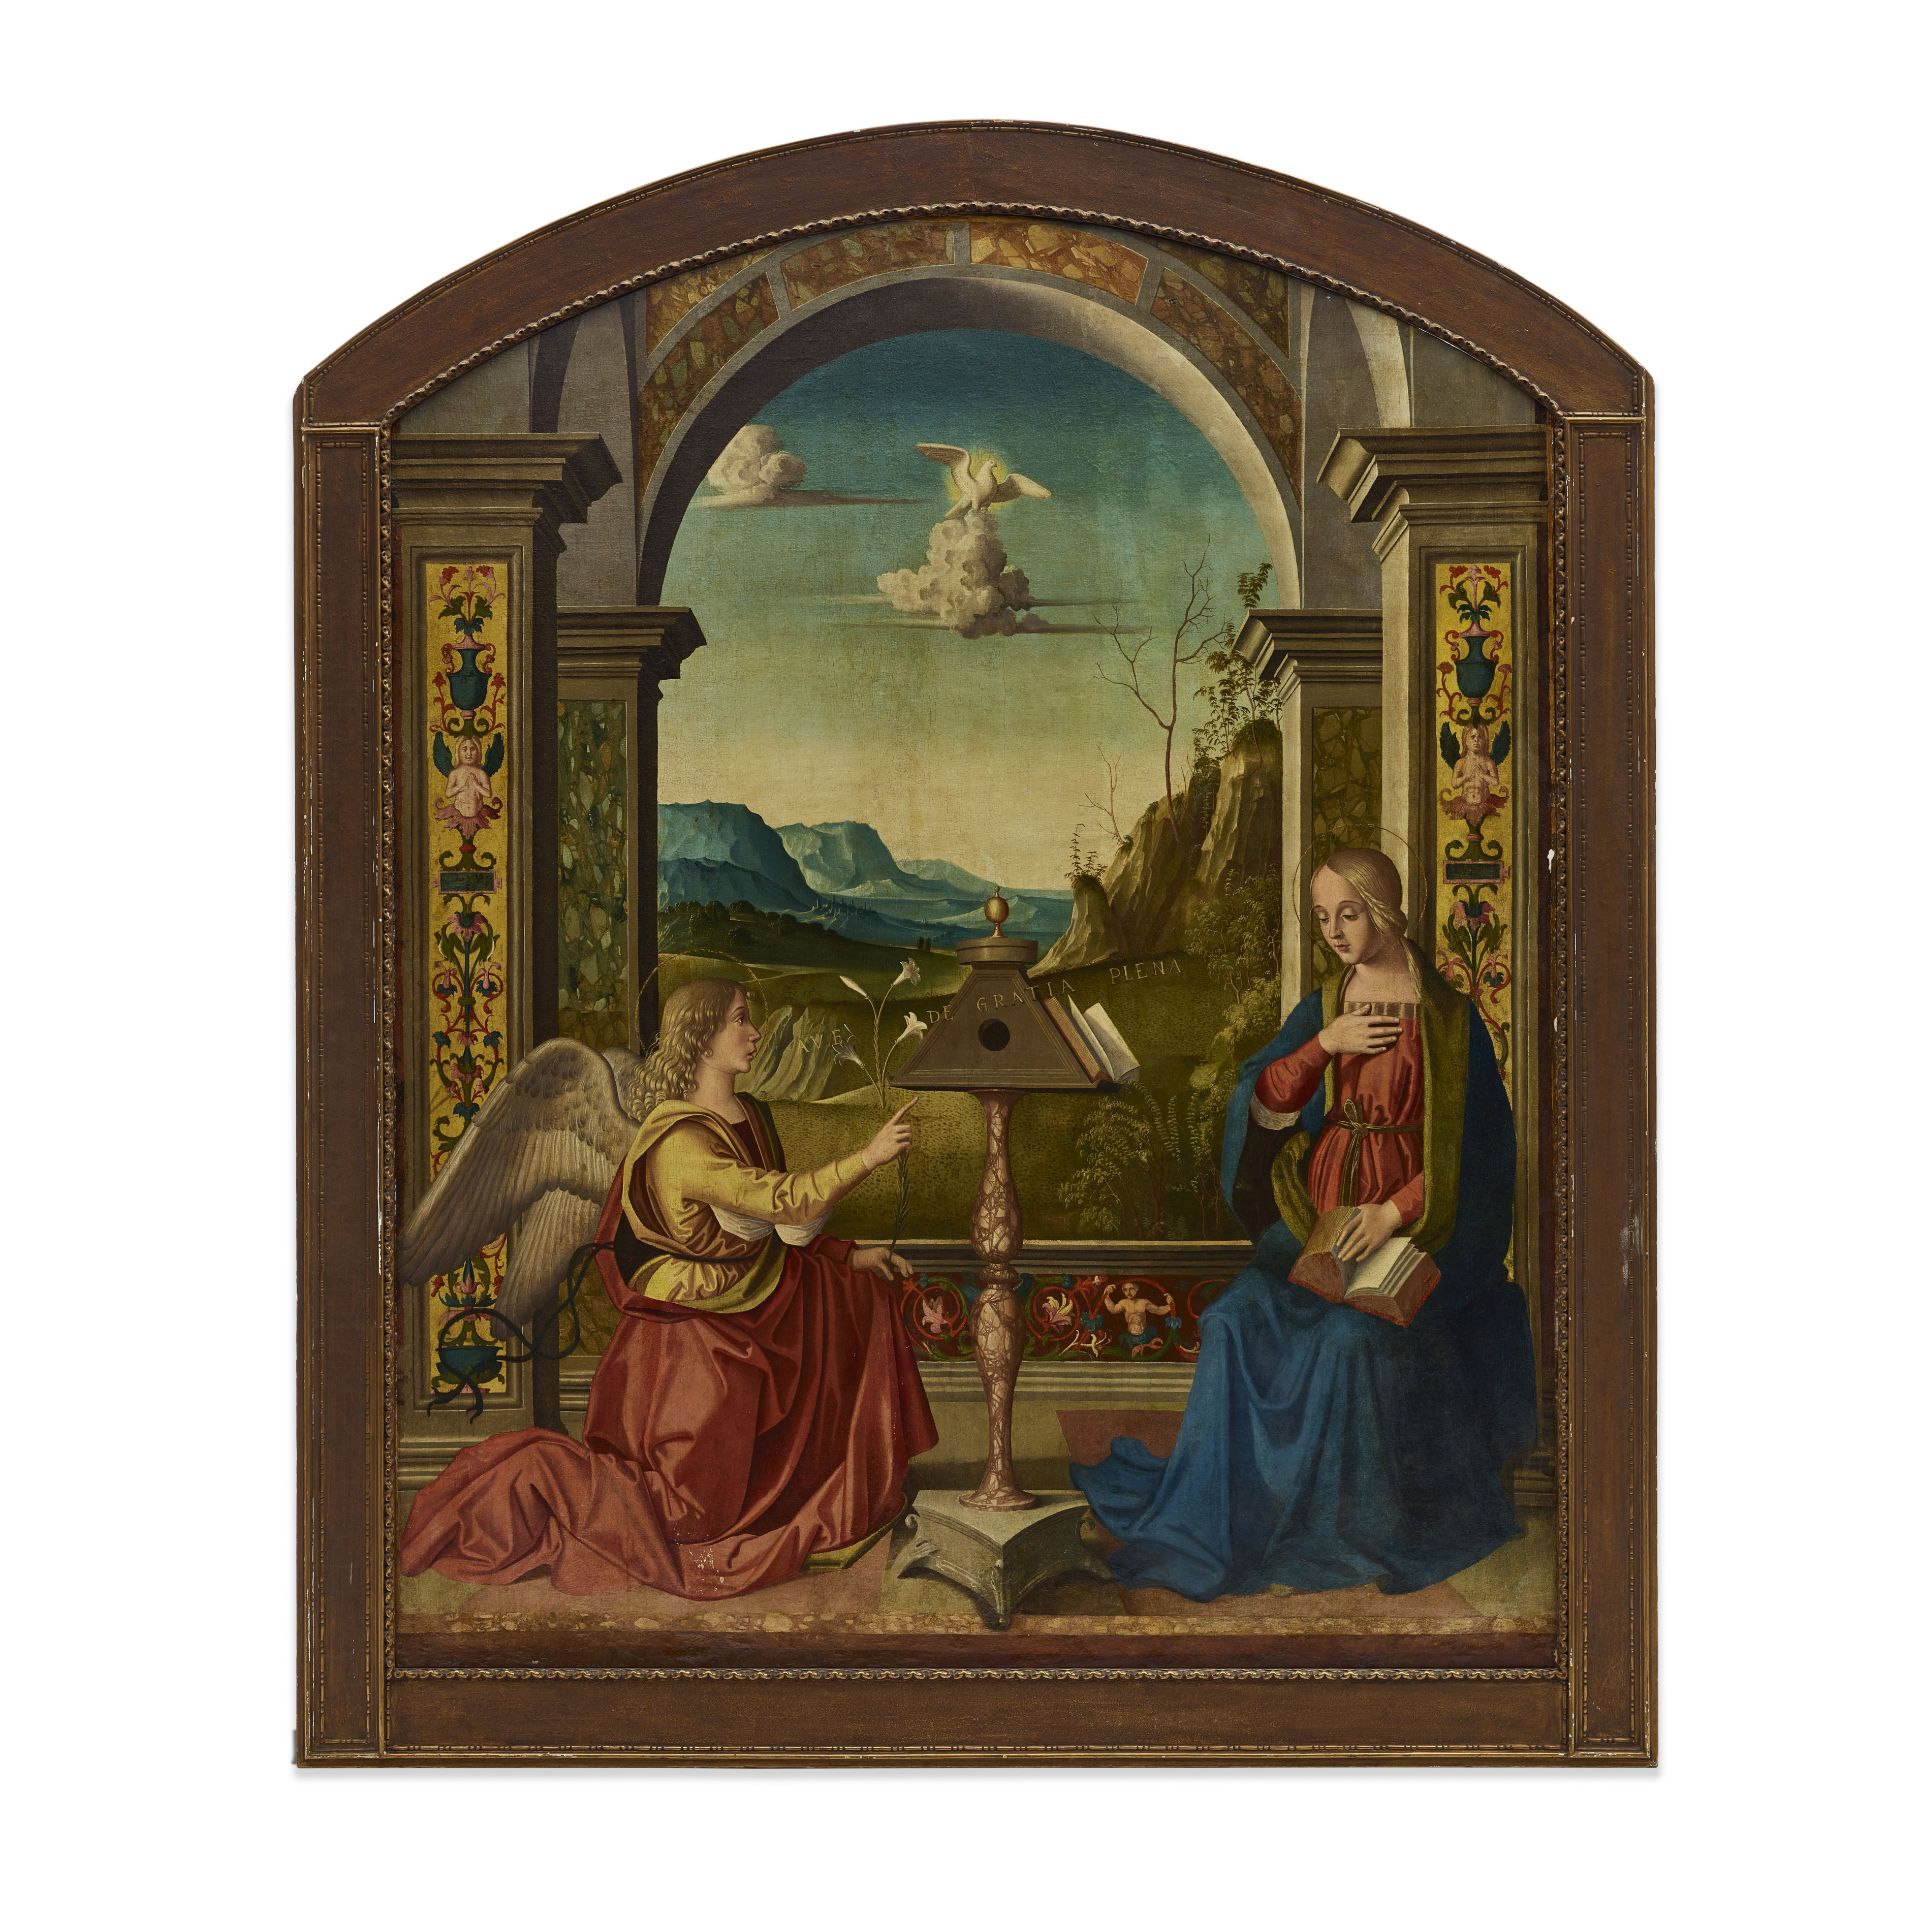 Marco Palmezzano (Forli 1460-1539) The Annunciation